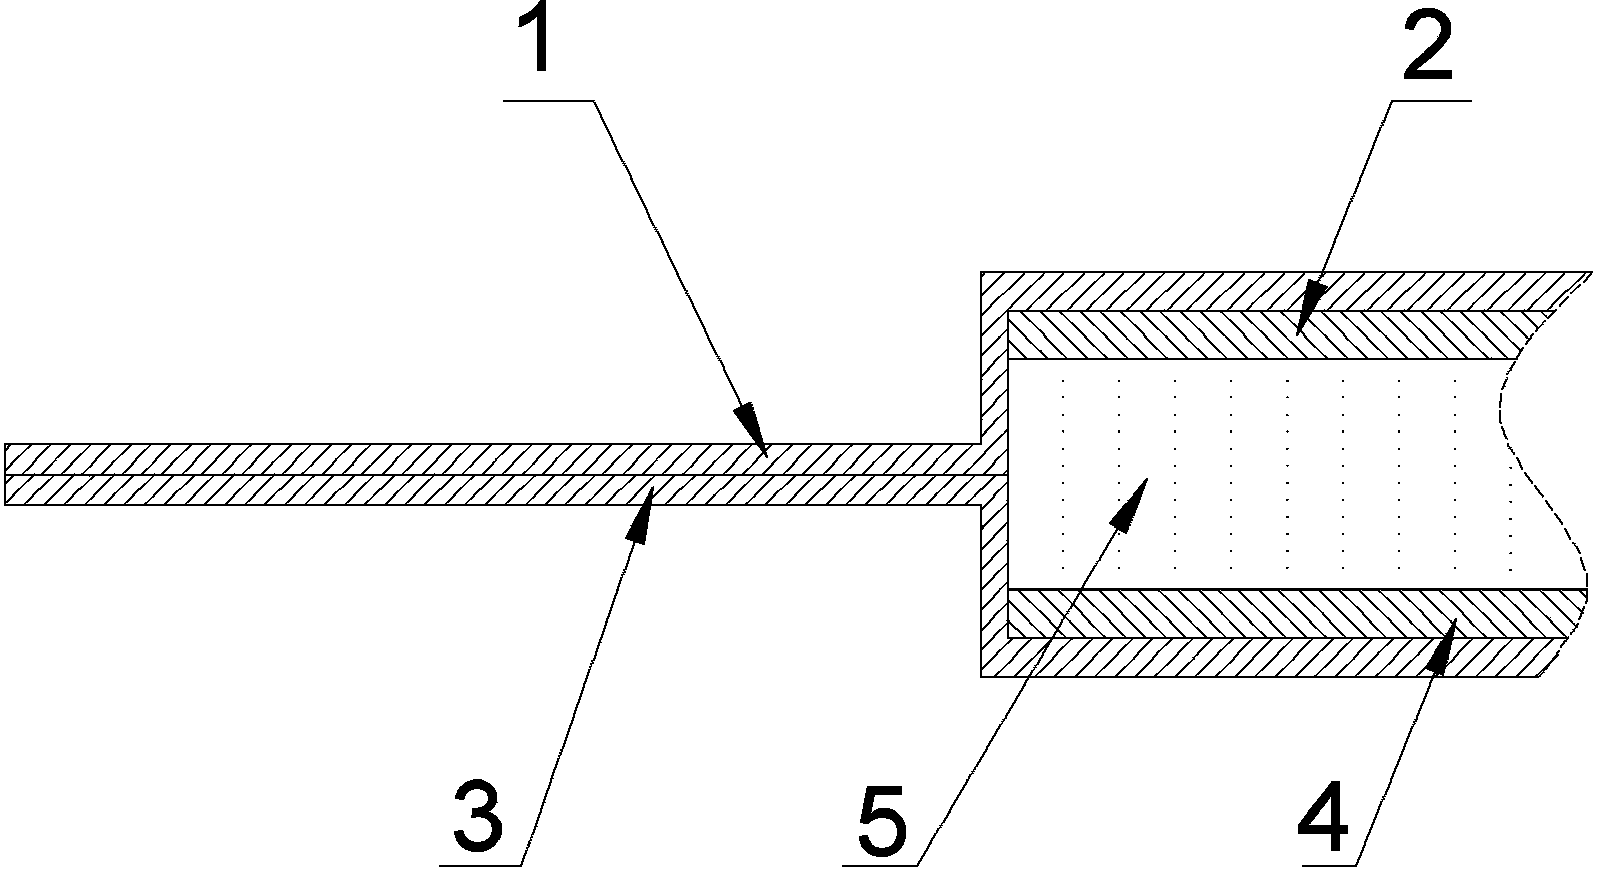 Strain gauge based on magnetorheological elastomer